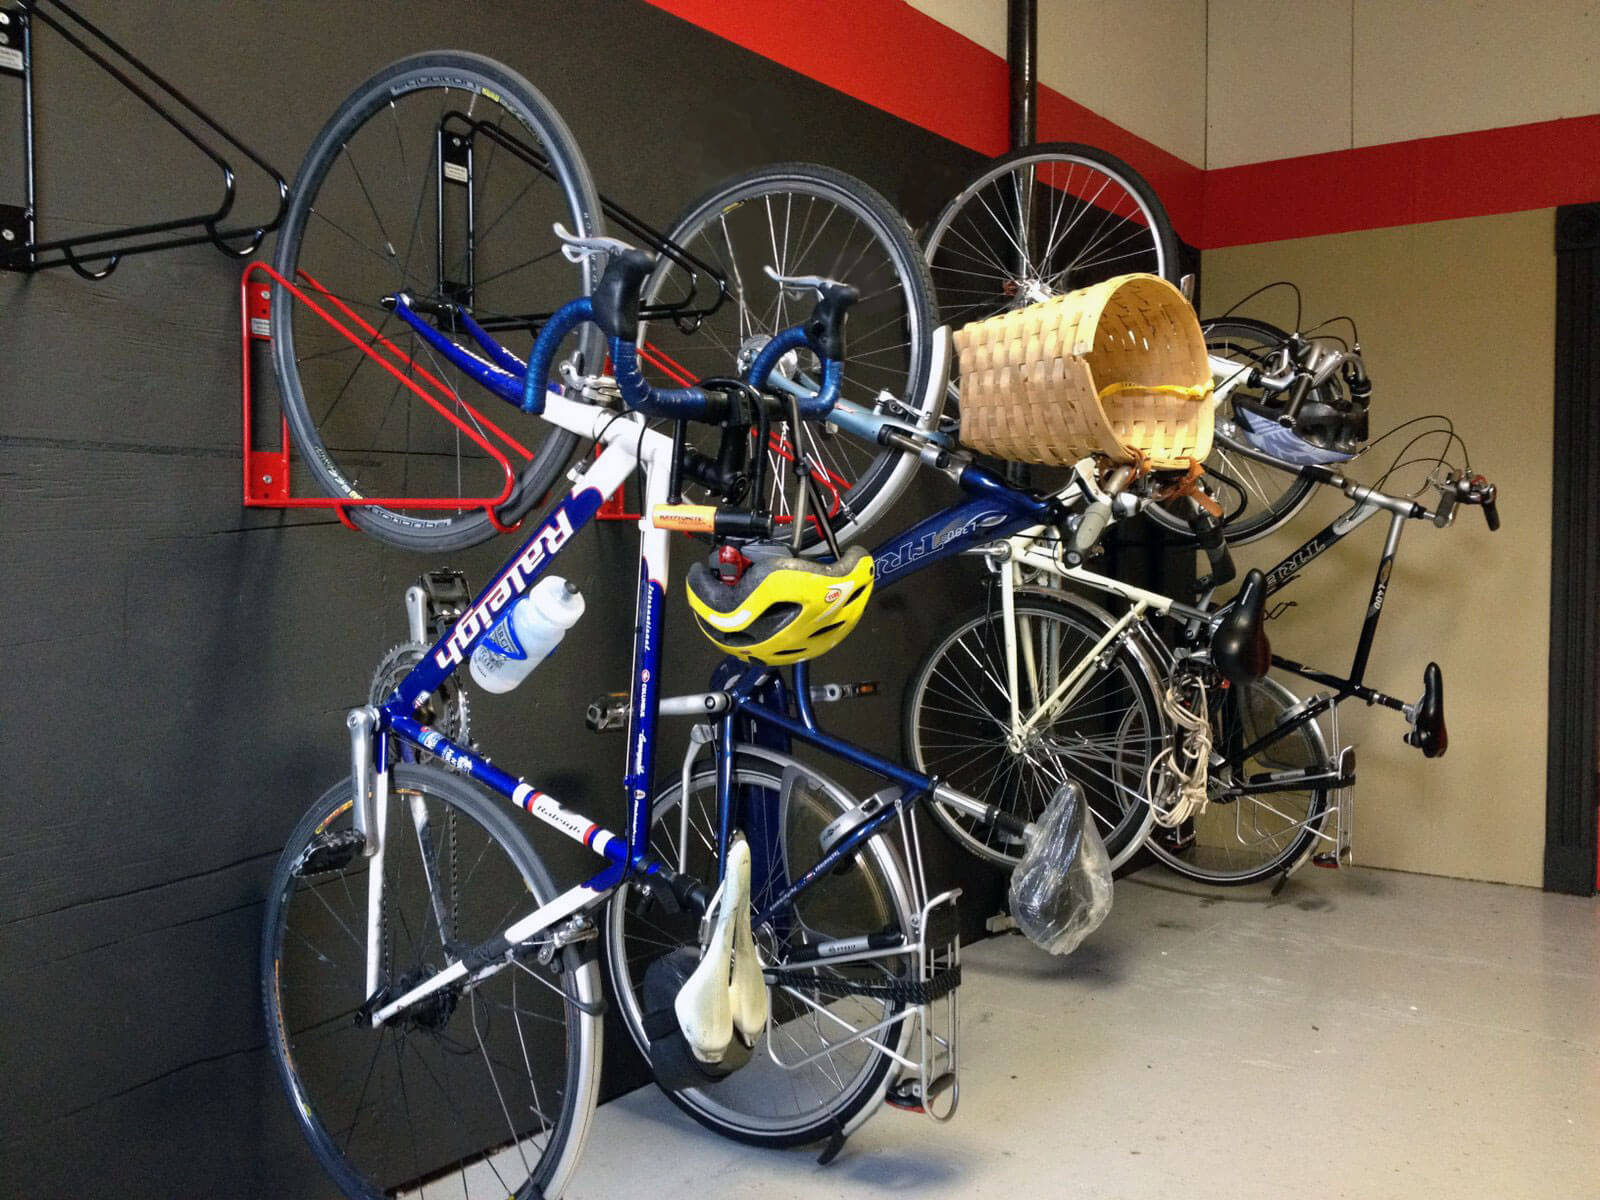 Bike Wall Rack - Vertical Bike Room Storage | CycleSafe